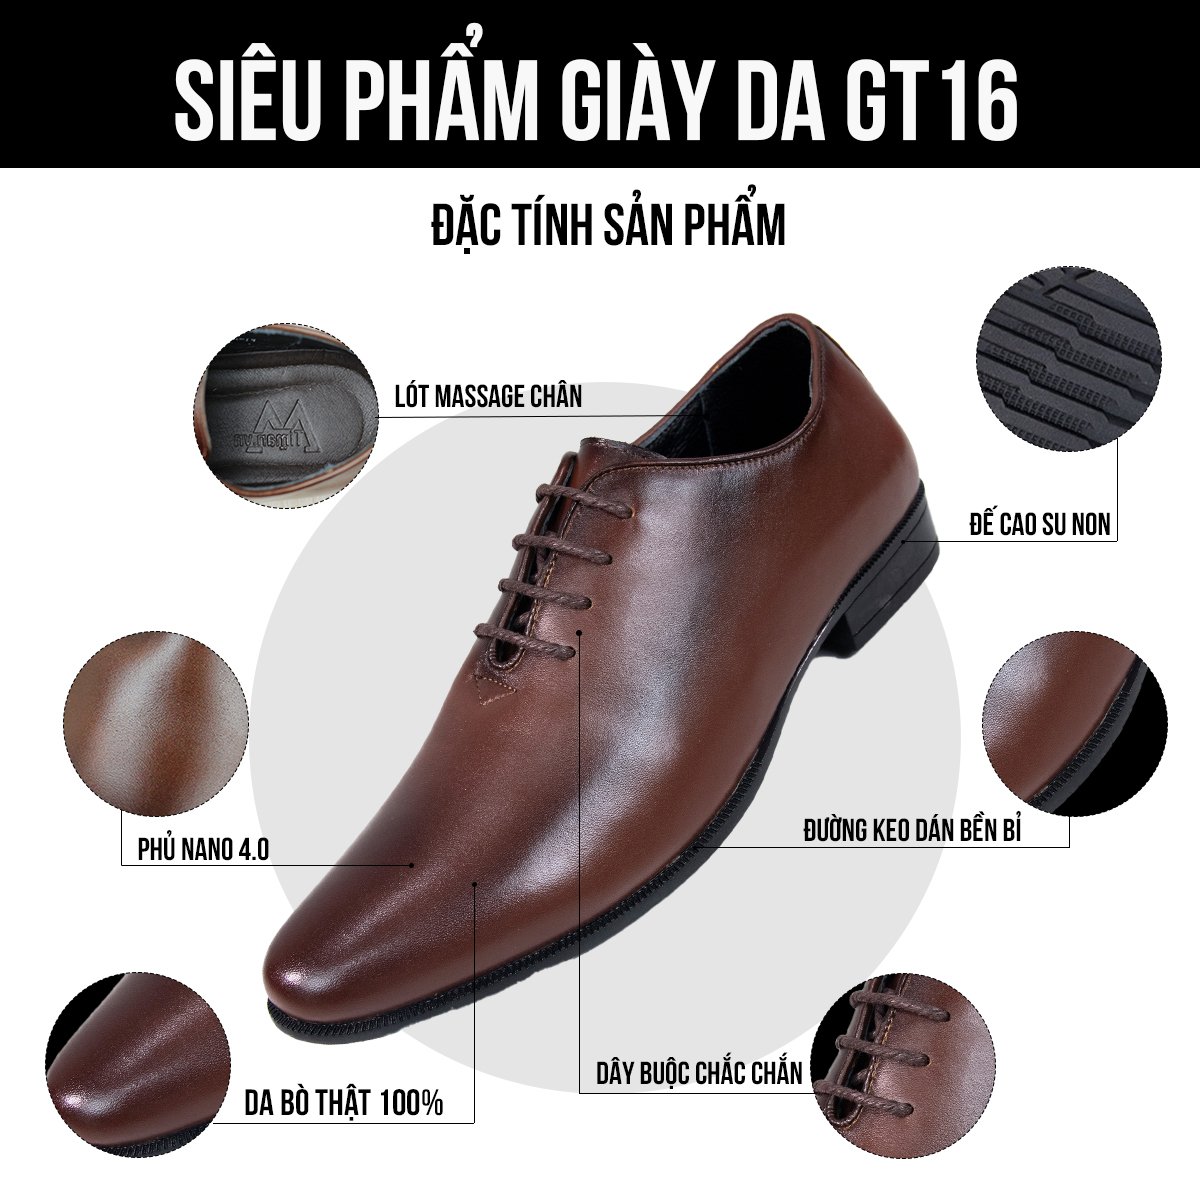 Giày tây nam GT16 đặc tính sản phẩm